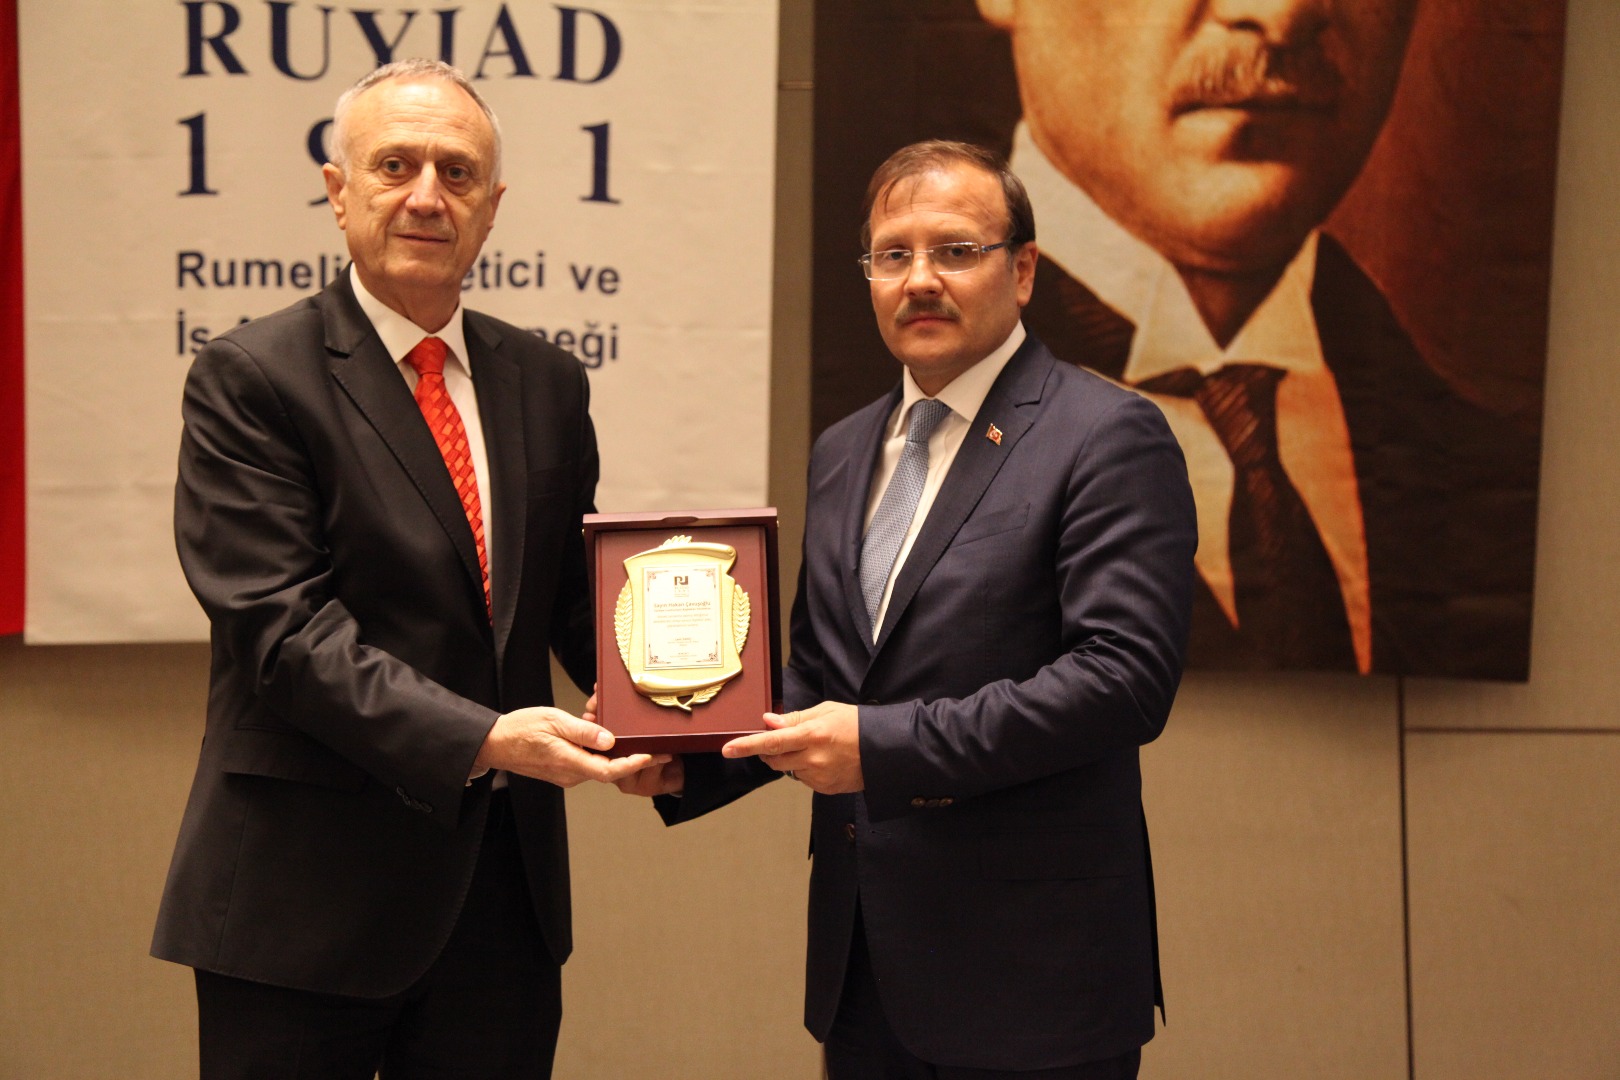 Başbakan Yardımcısı Hakan Çavuşoğlu onuruna akşam yemeği düzenledik.